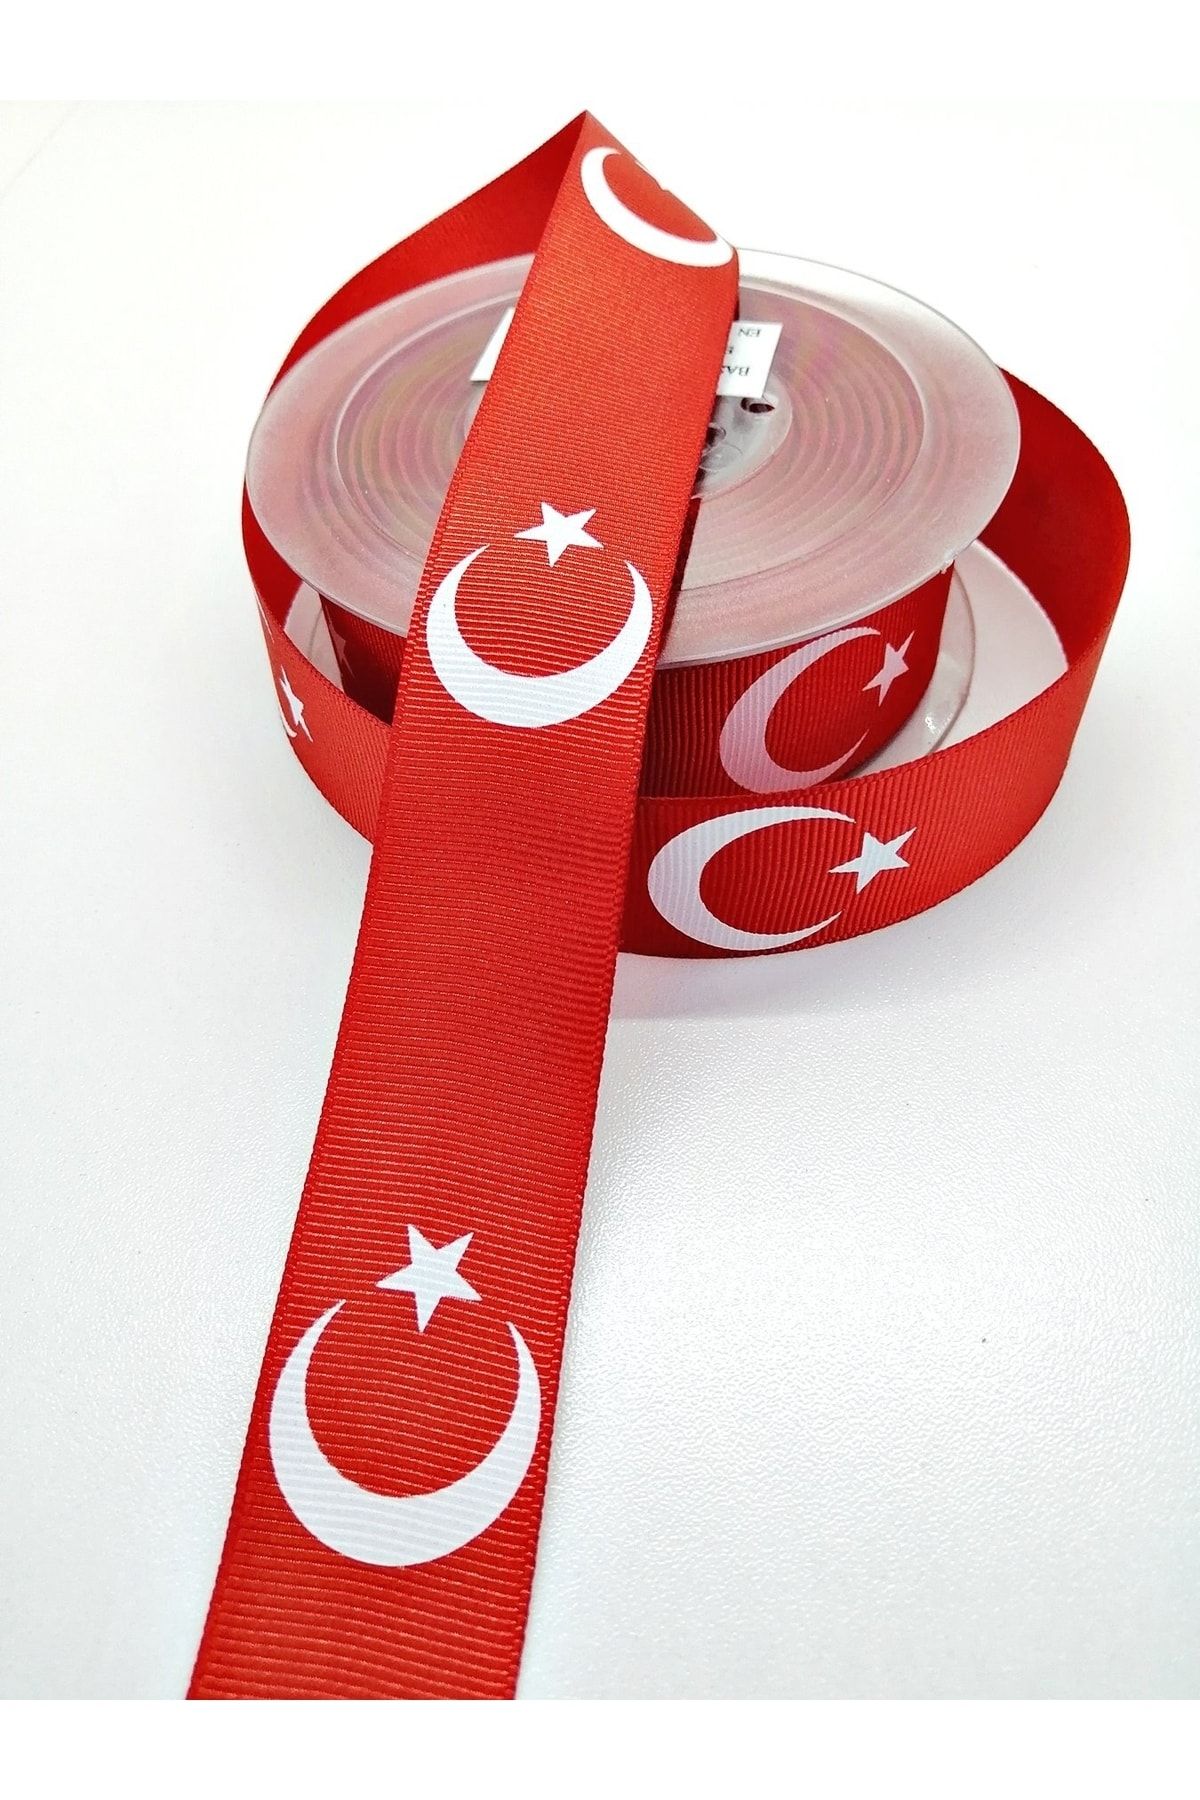 Hobigram Kırmızı Türk Bayraklı Grogren Kurdele 3 Cm 2 Metre